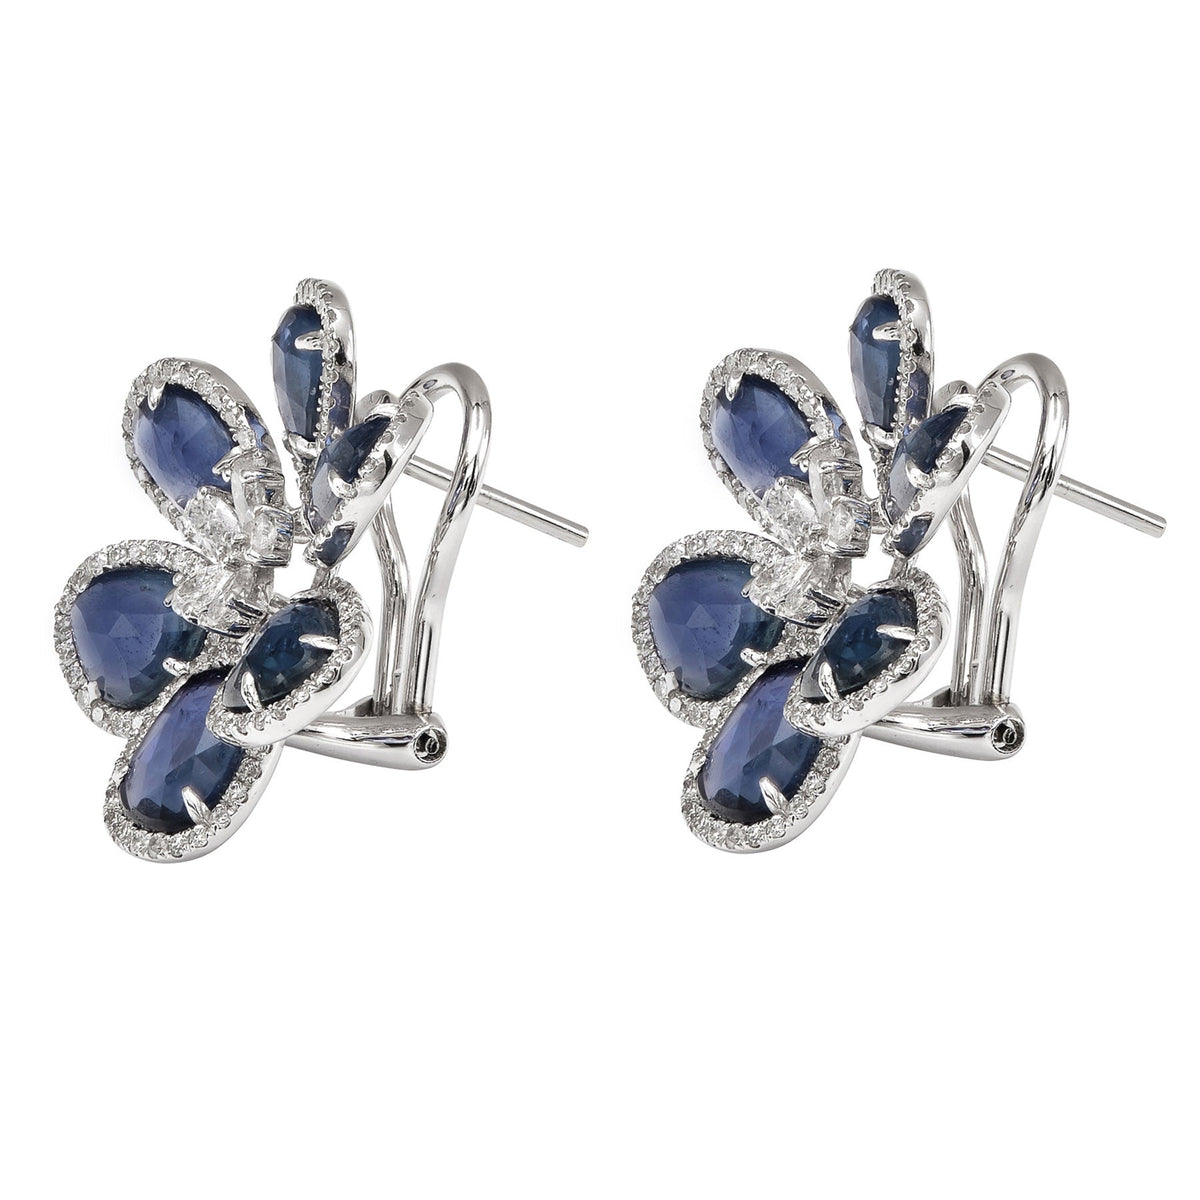 Blue & Pink Sapphire Slice Earrings